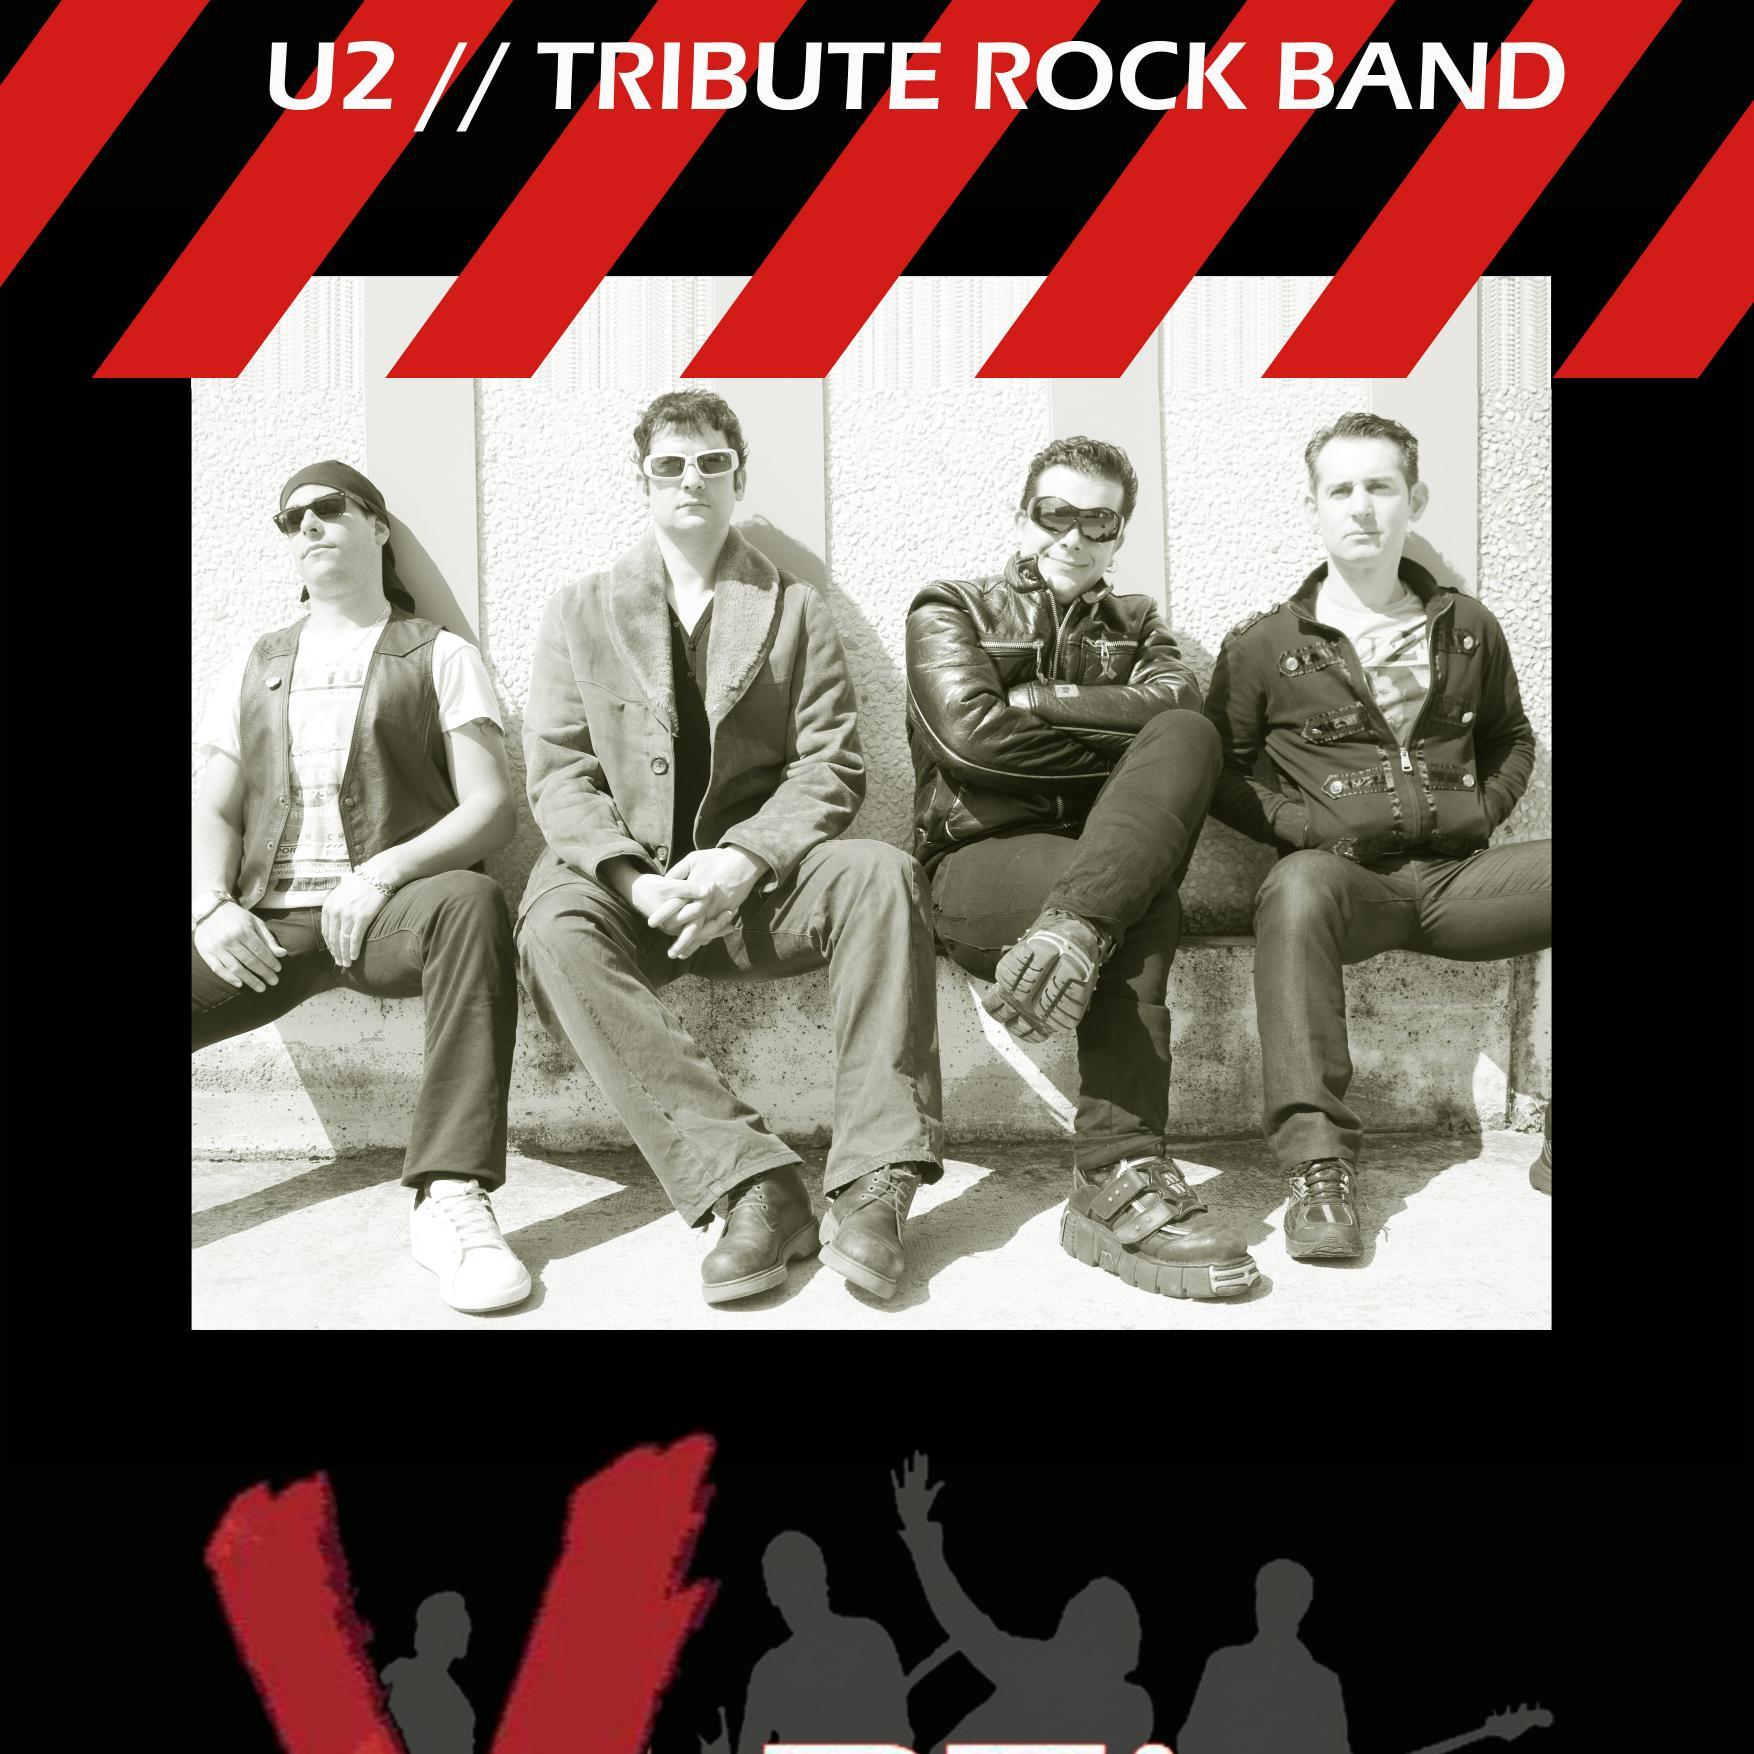 Banda Tributo a la inigualable agrupacion Irlandesa de U2